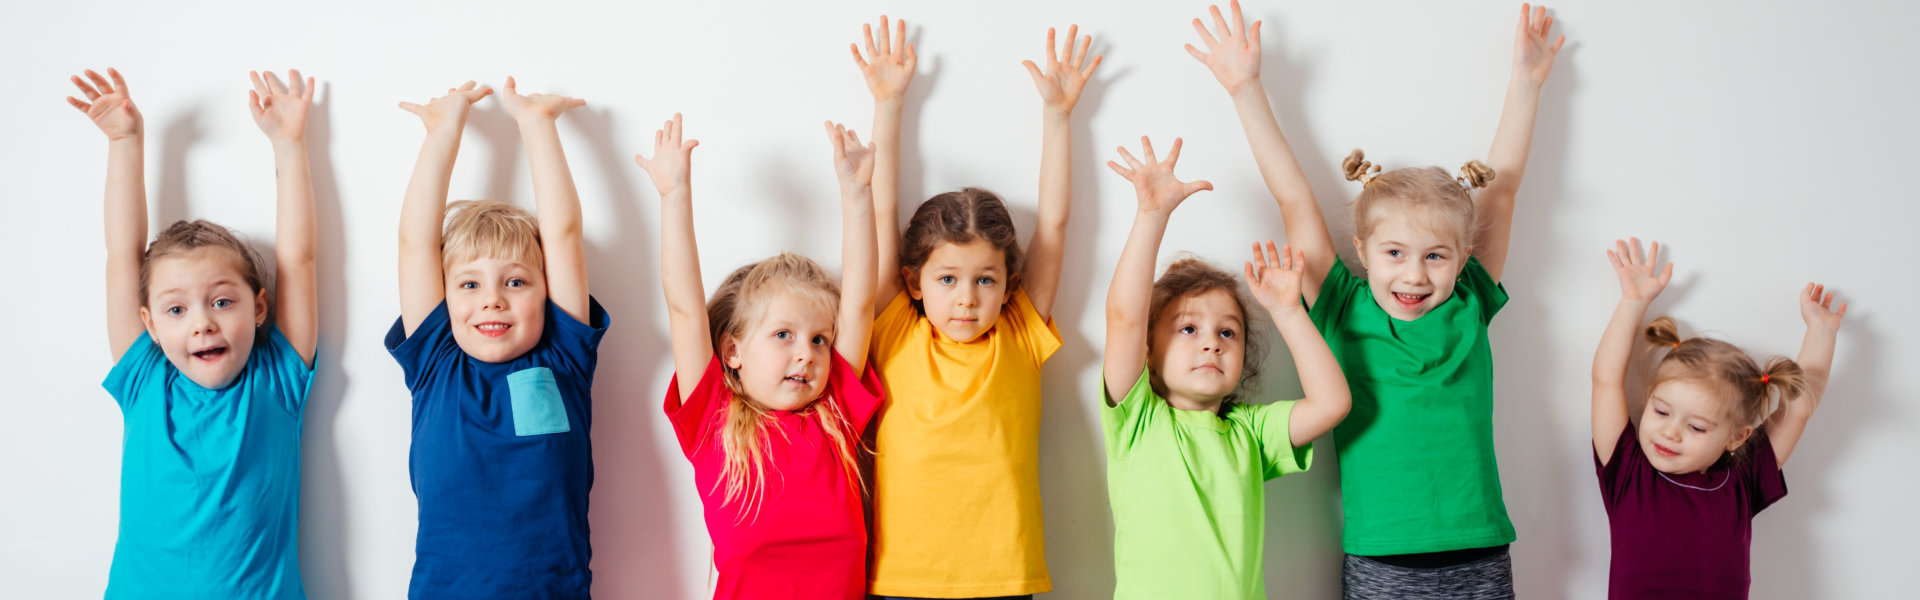 kids raising their hands